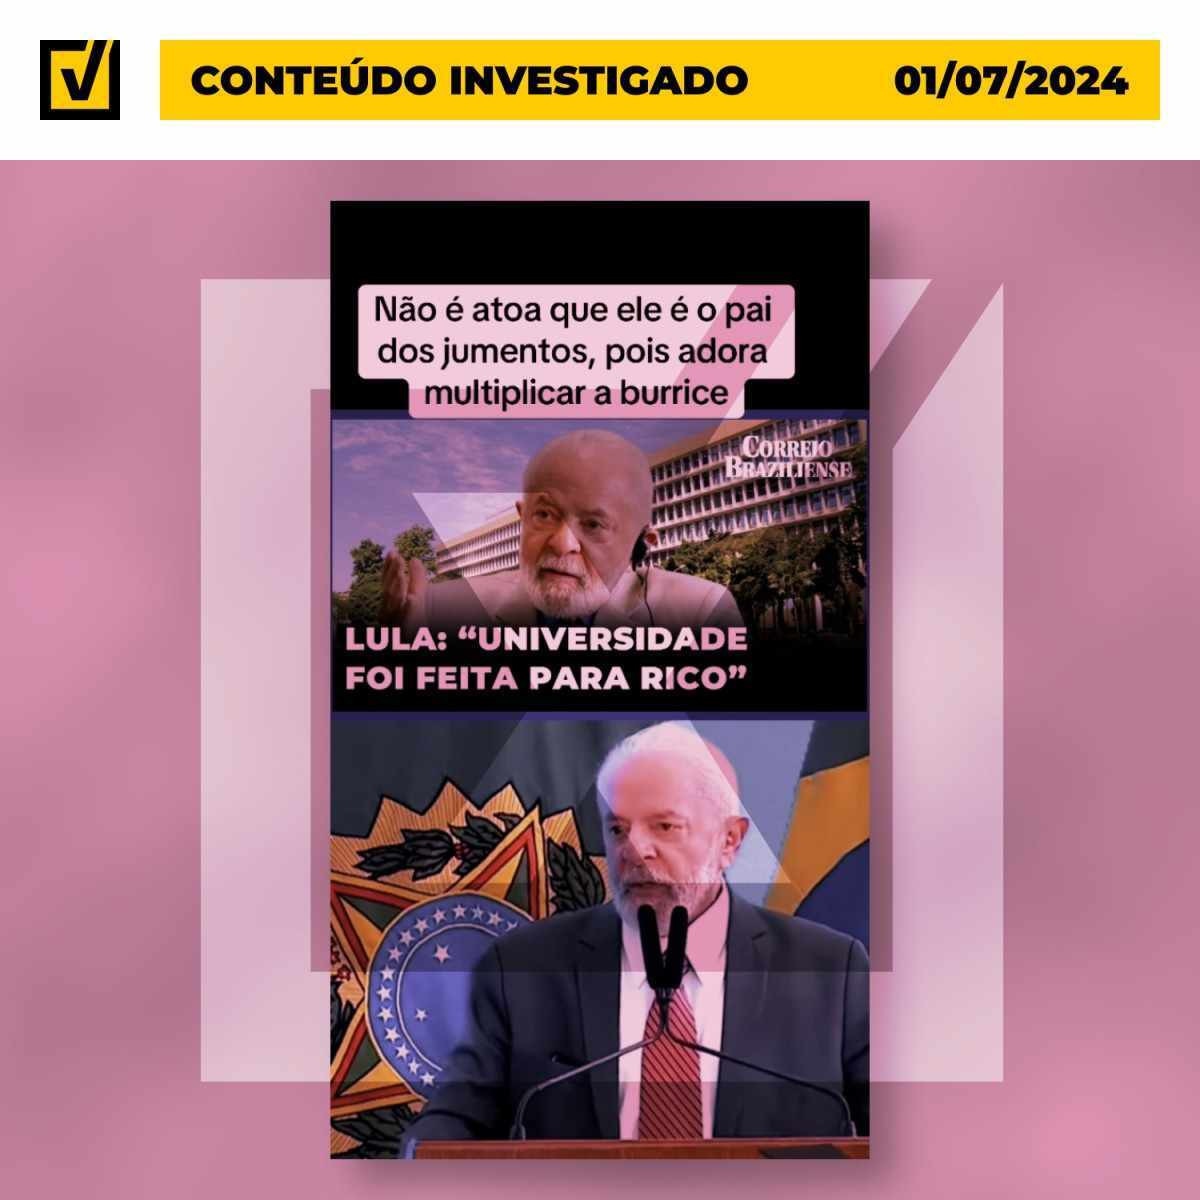 Vídeo engana ao tirar de contexto fala de Lula sobre 